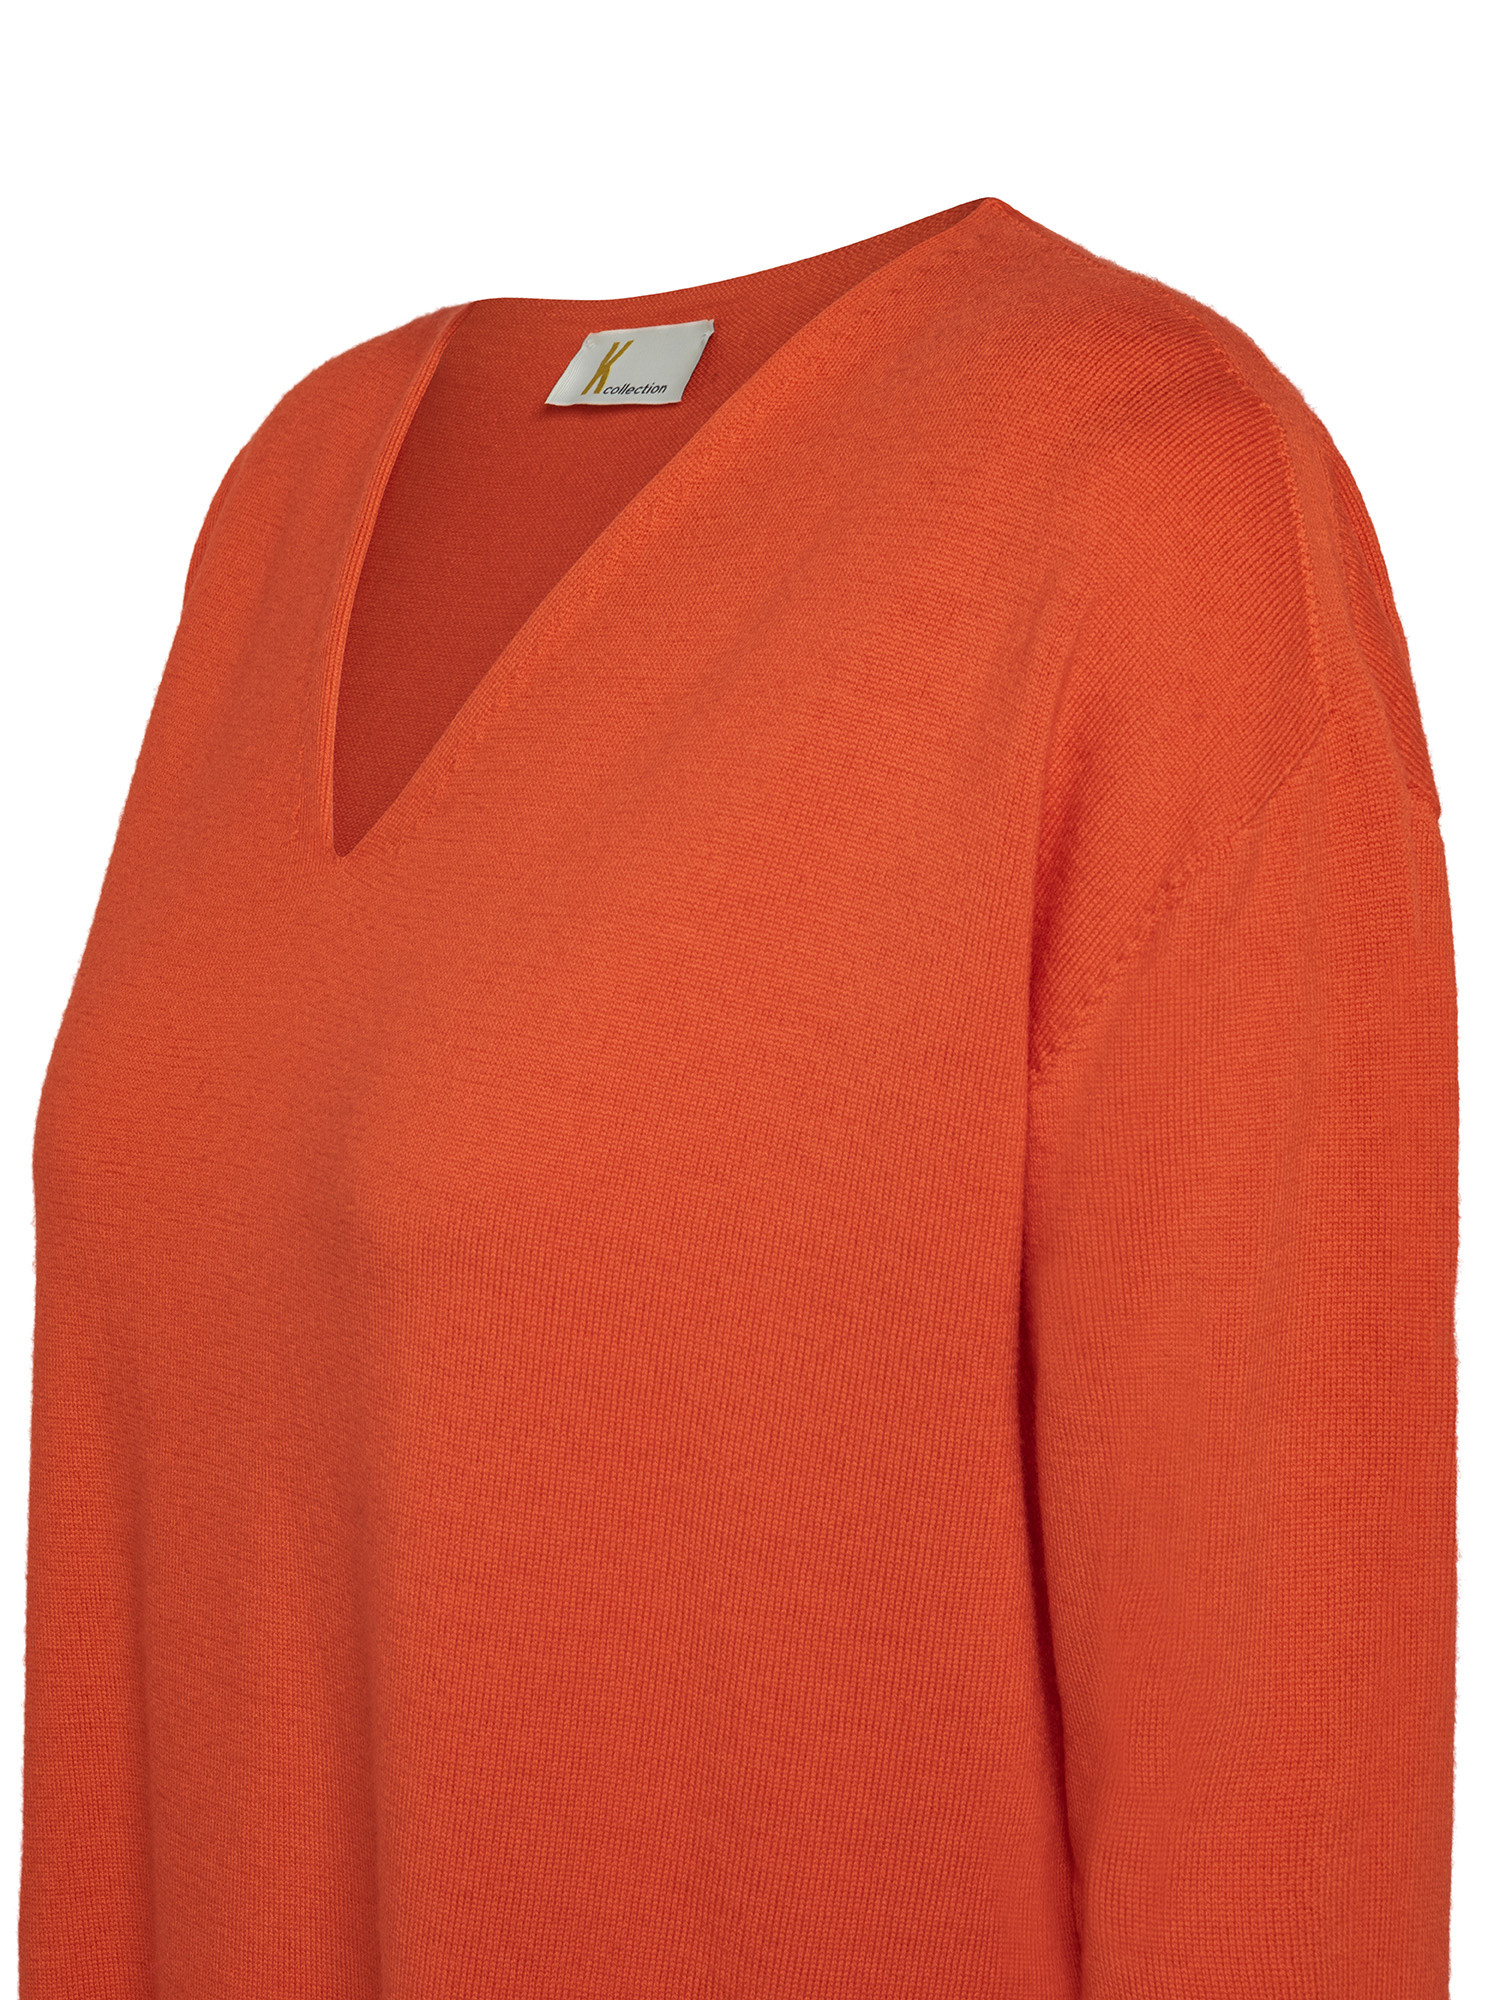 K Collection - V-neck sweater, Orange, large image number 2